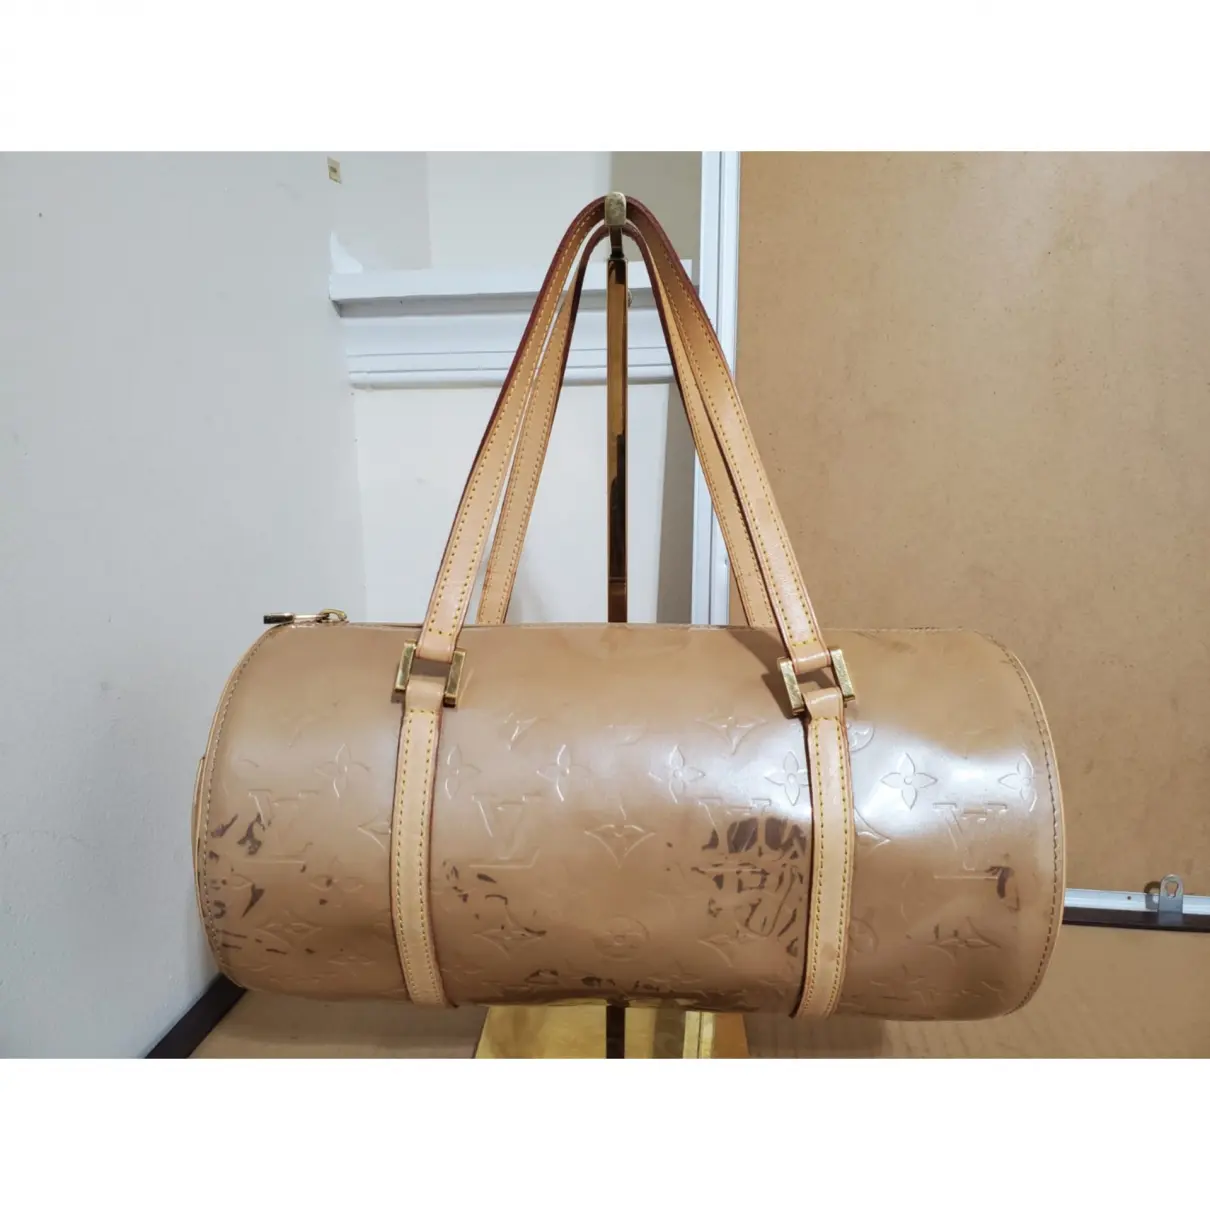 Buy Louis Vuitton Papillon BB leather handbag online